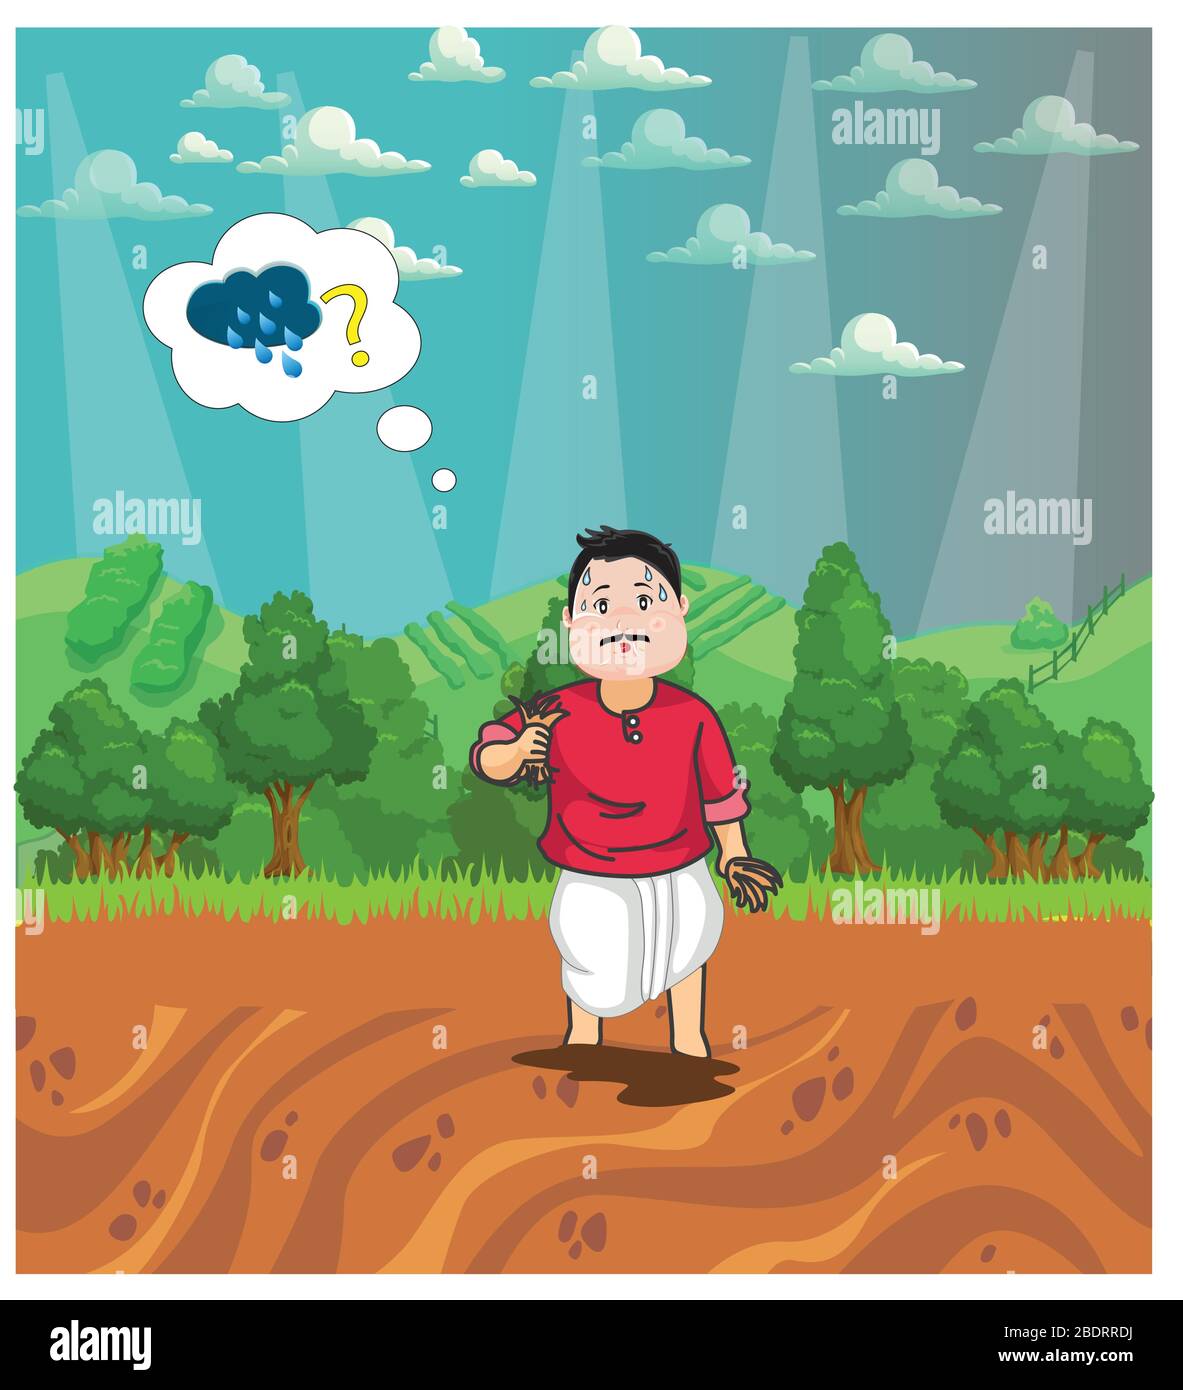 Coltivatore che indossa tristemente per la pioggia come coltivatore non può iniziare l'agricoltura senza acqua. Disegno di carattere di coltivatore che pensa a pioggia per l'agricoltura. Paesaggio desig Illustrazione Vettoriale